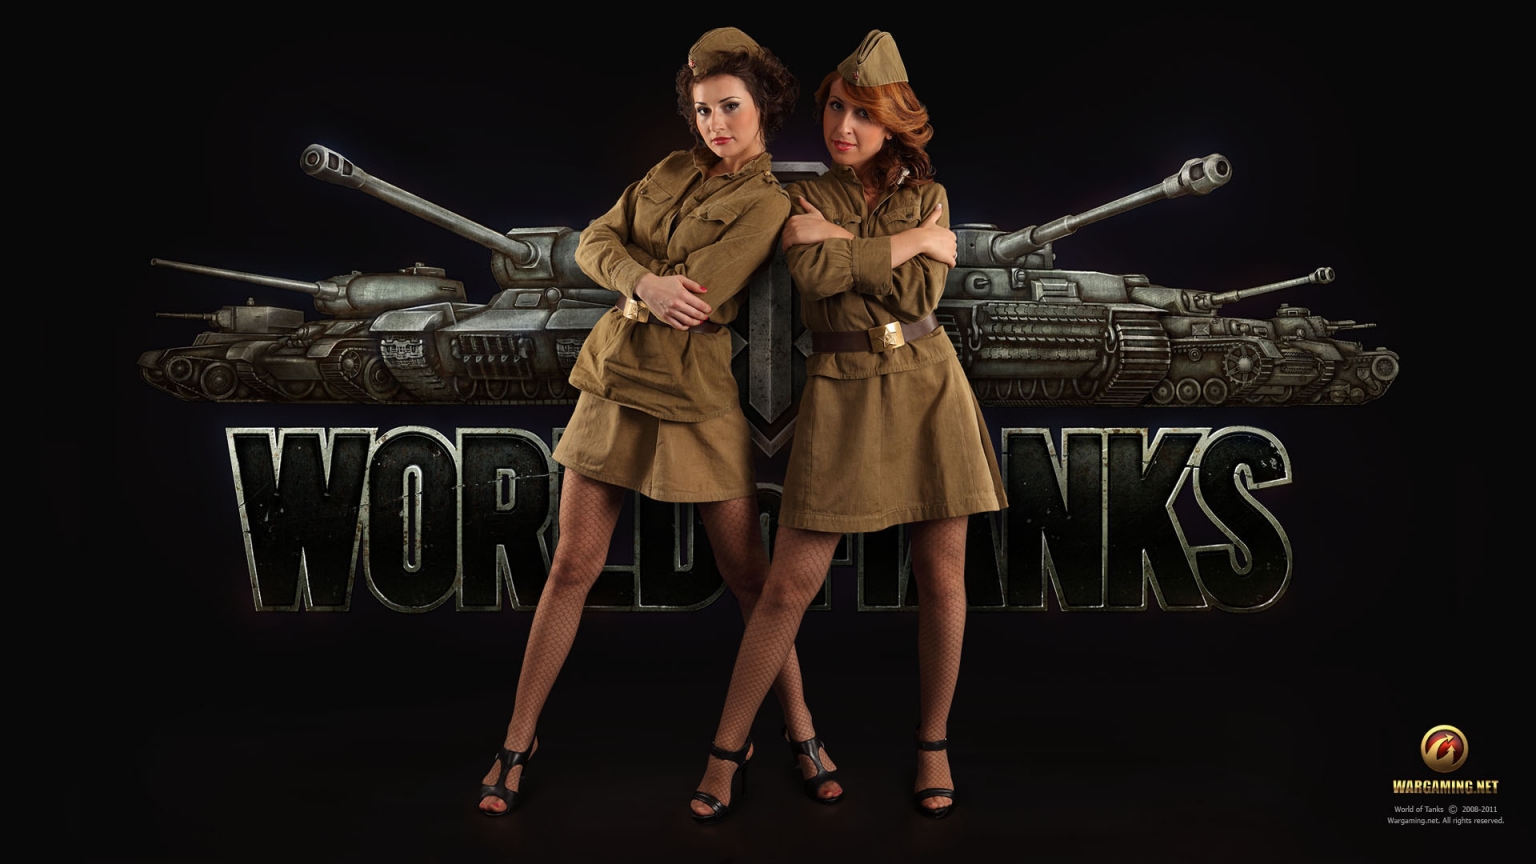 World of Tanks Girls for 1536 x 864 HDTV resolution